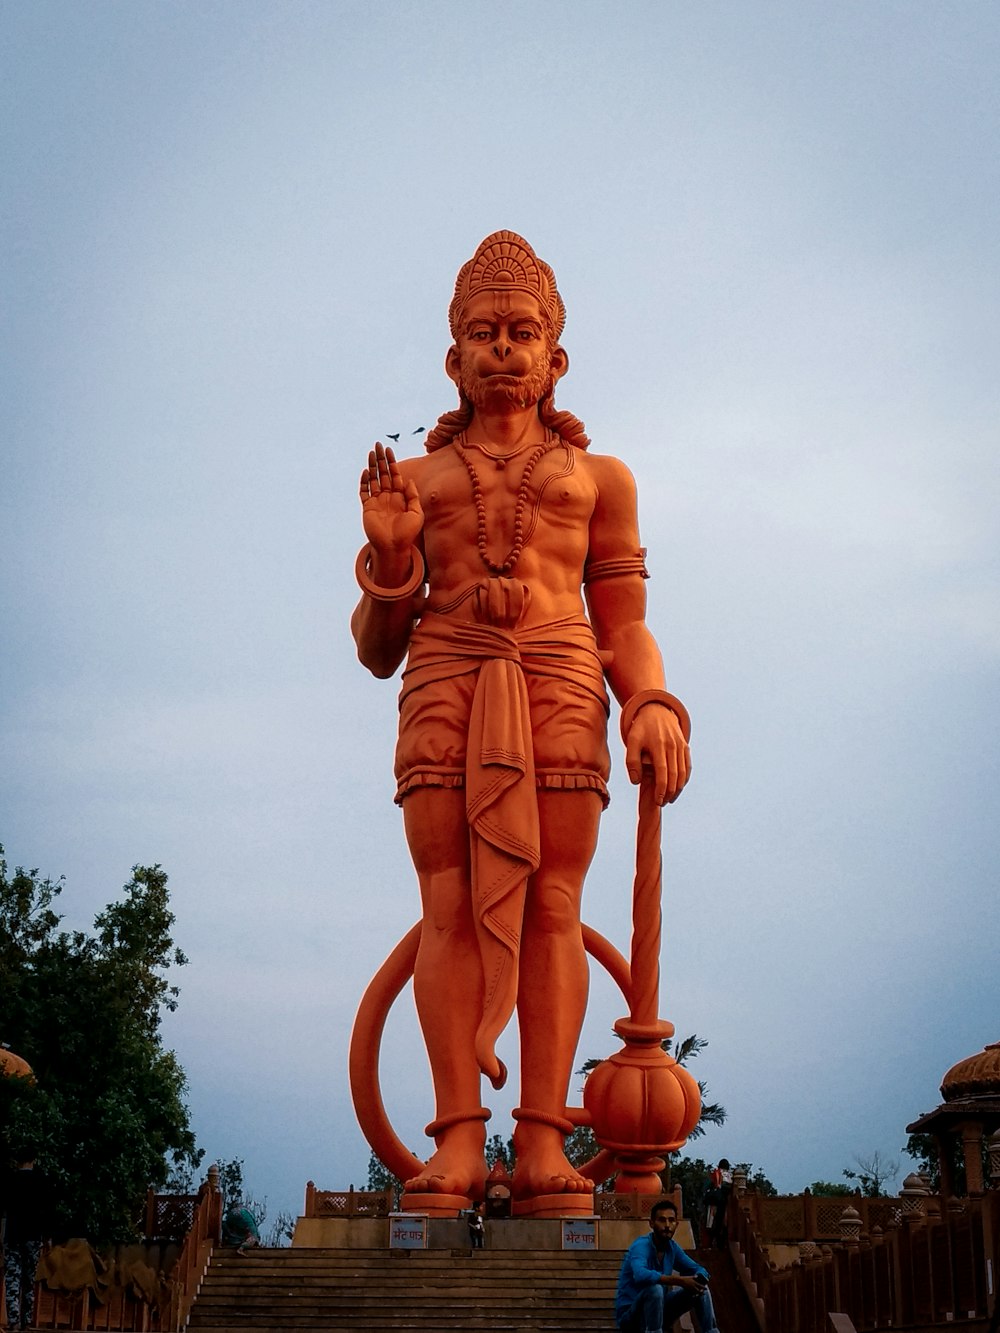 Hanuman statue photo – Free India Image on Unsplash